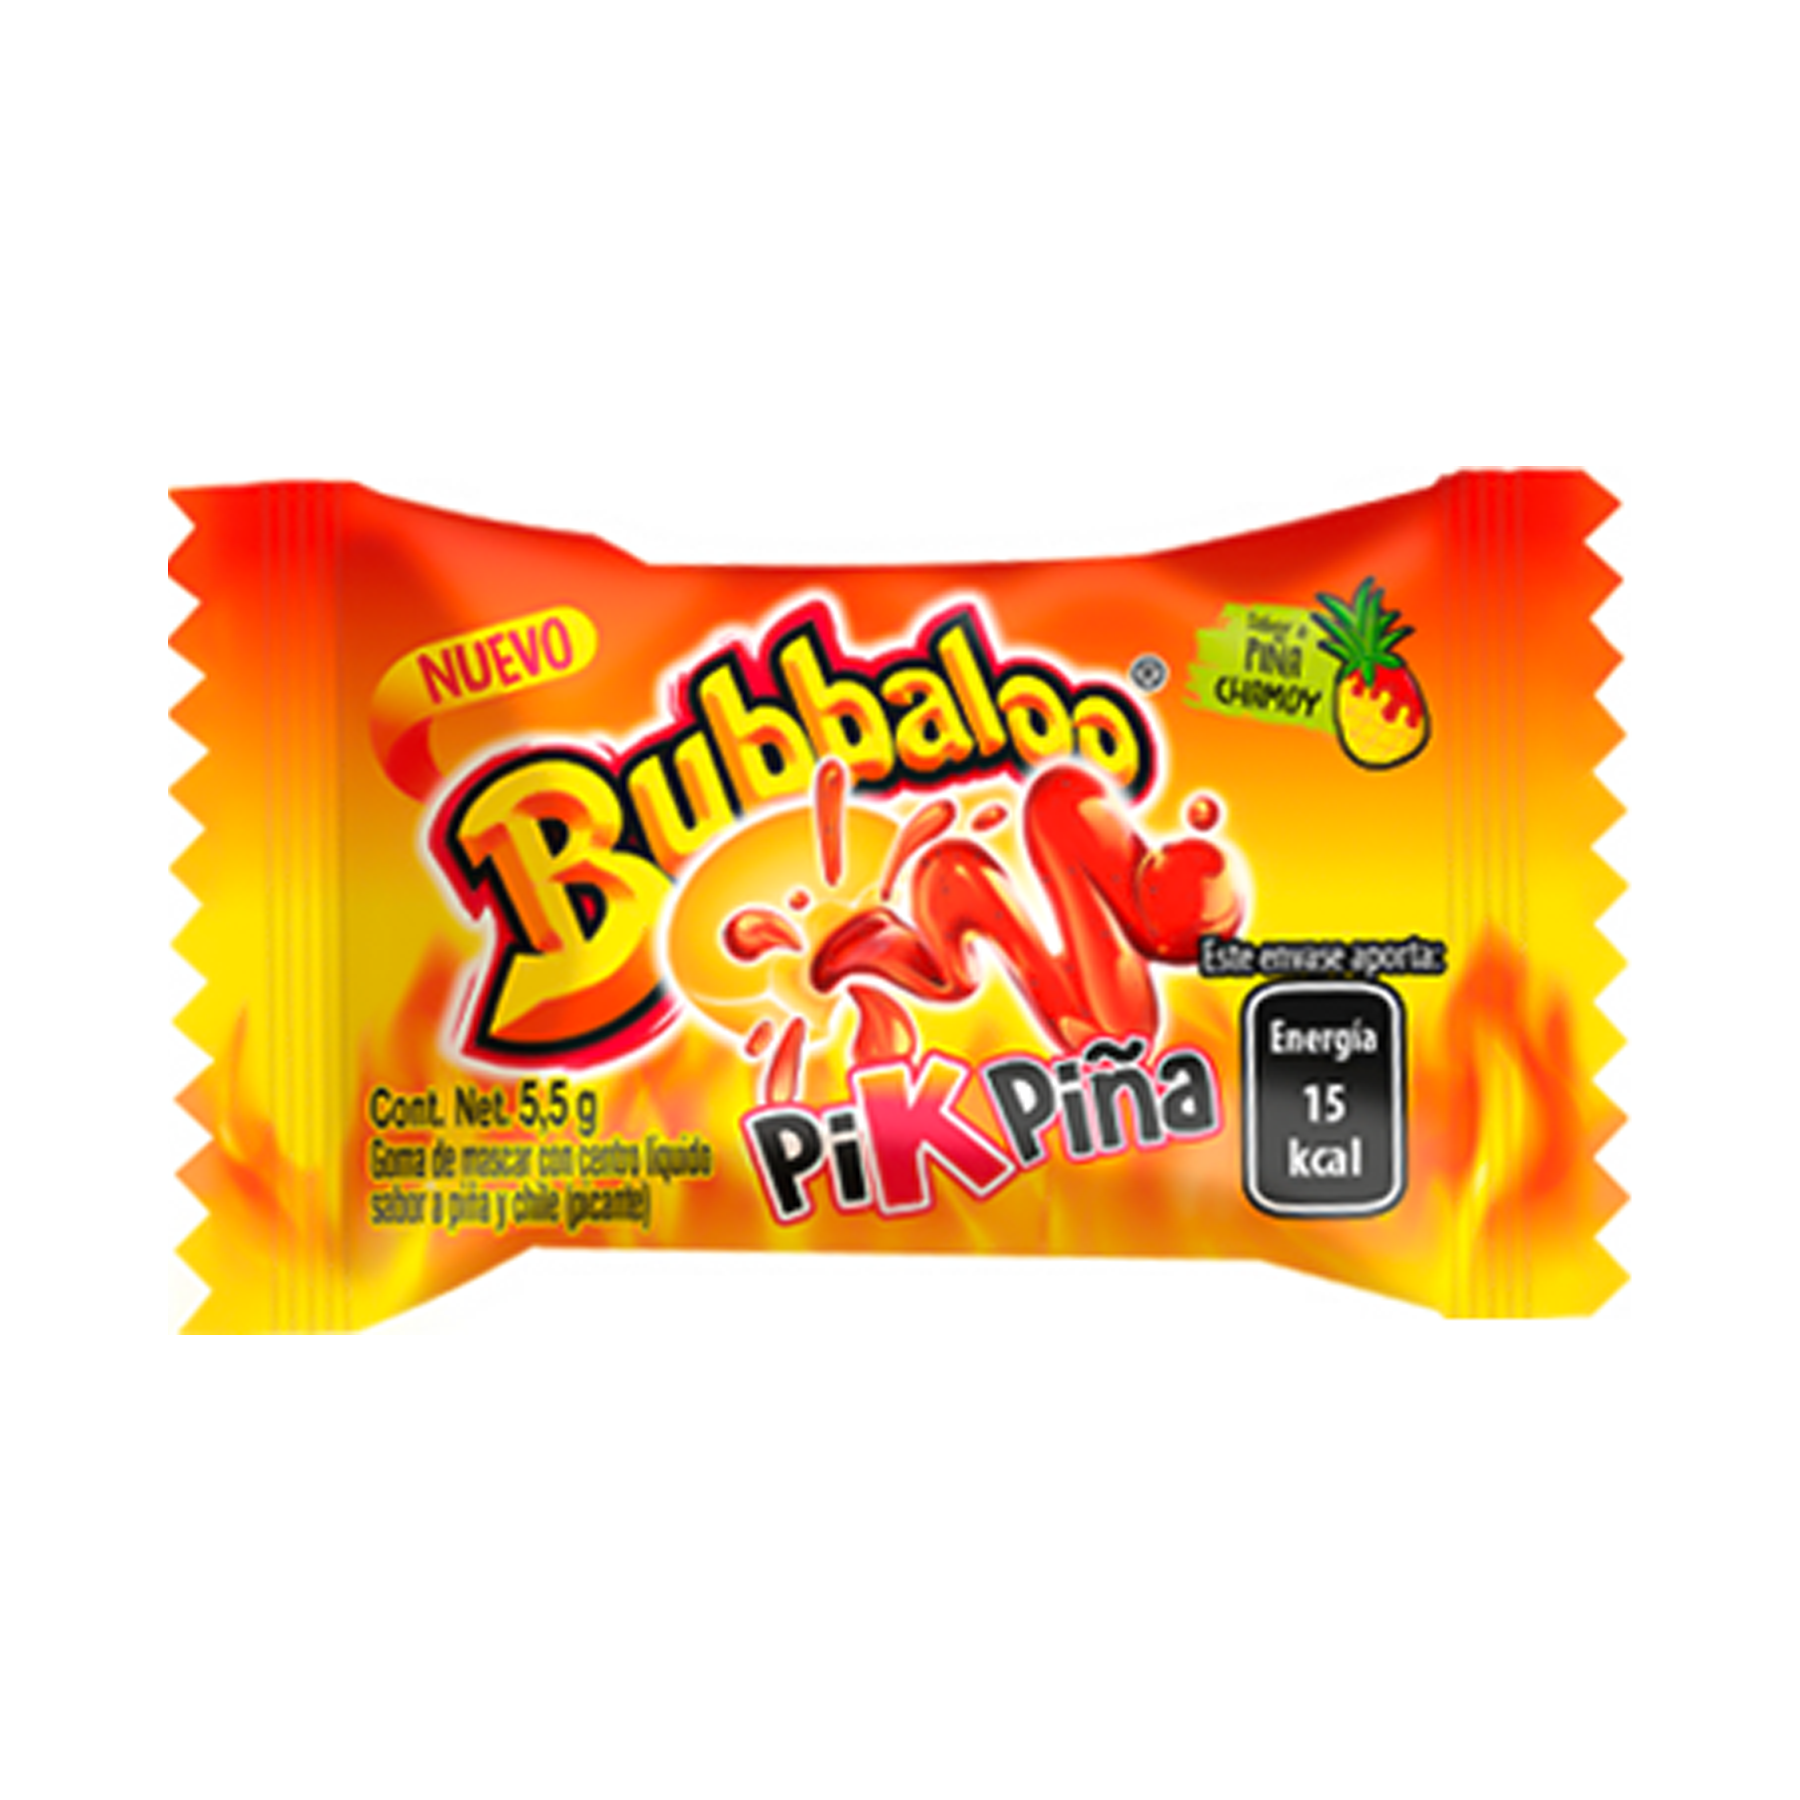 Bubbaloo Goma Pik Piña (5.5G)